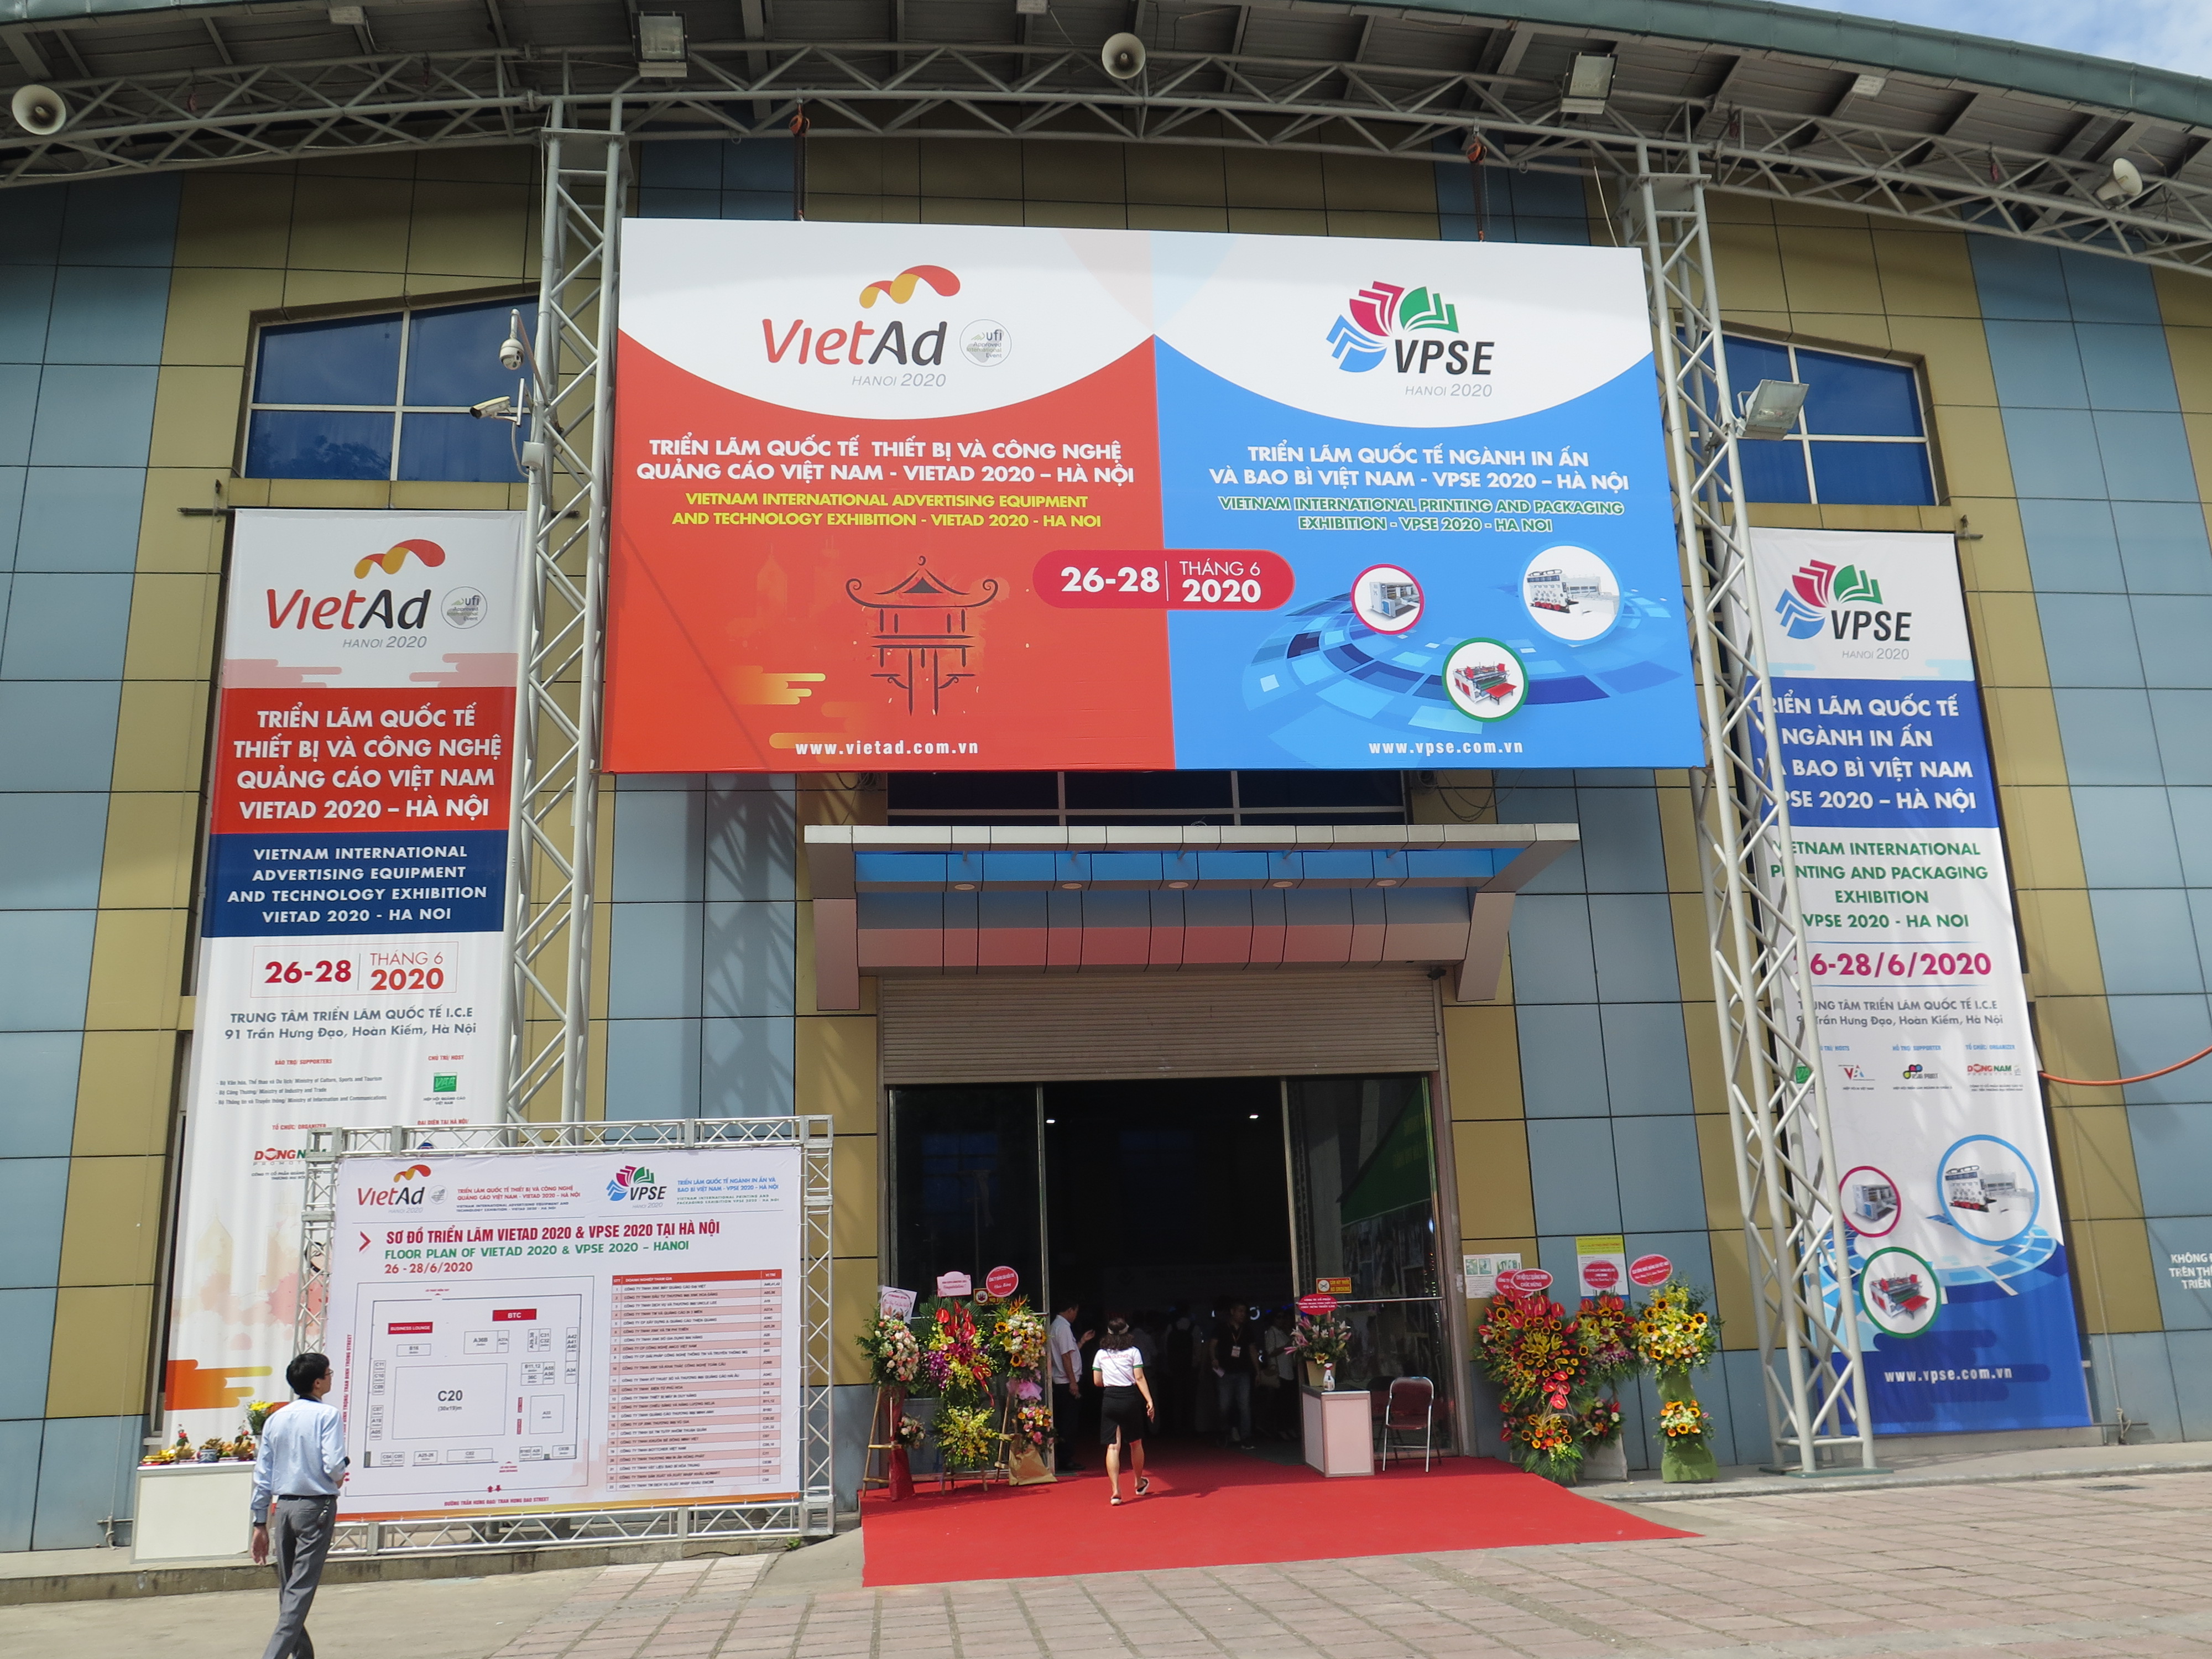 Triển lãm quốc tế thiết bị và công nghệ quảng cáo Việt Nam (VIETAD 2020) và Triển lãm quốc tế ngành in ấn và bao bì Việt Nam (VPSE 2020)